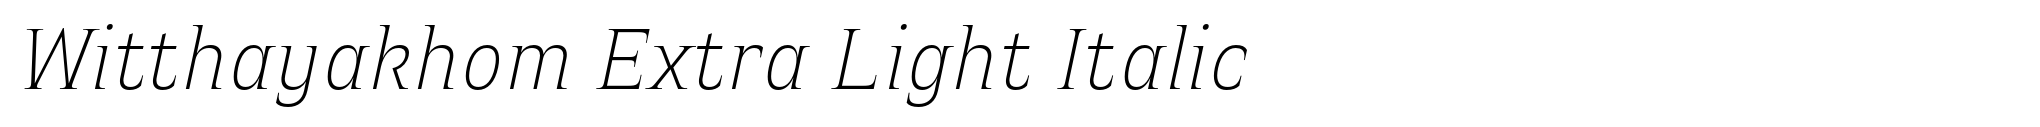 Witthayakhom Extra Light Italic image